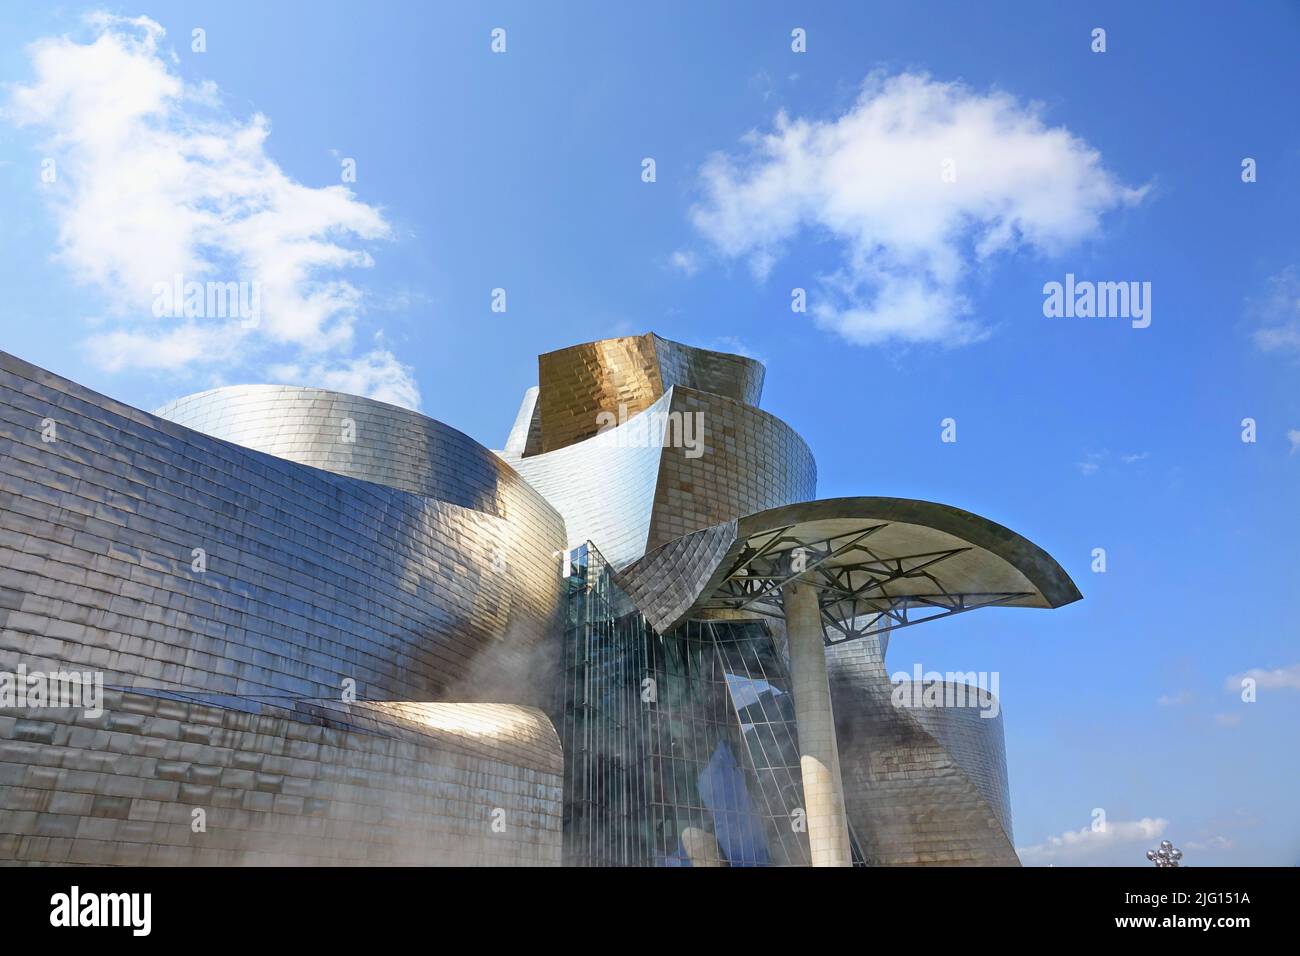 Art moderne et contemporain Musée Guggenheim, conçu par l'architecte Frank Gehry. Bilbao, Espagne - août 2018 Banque D'Images